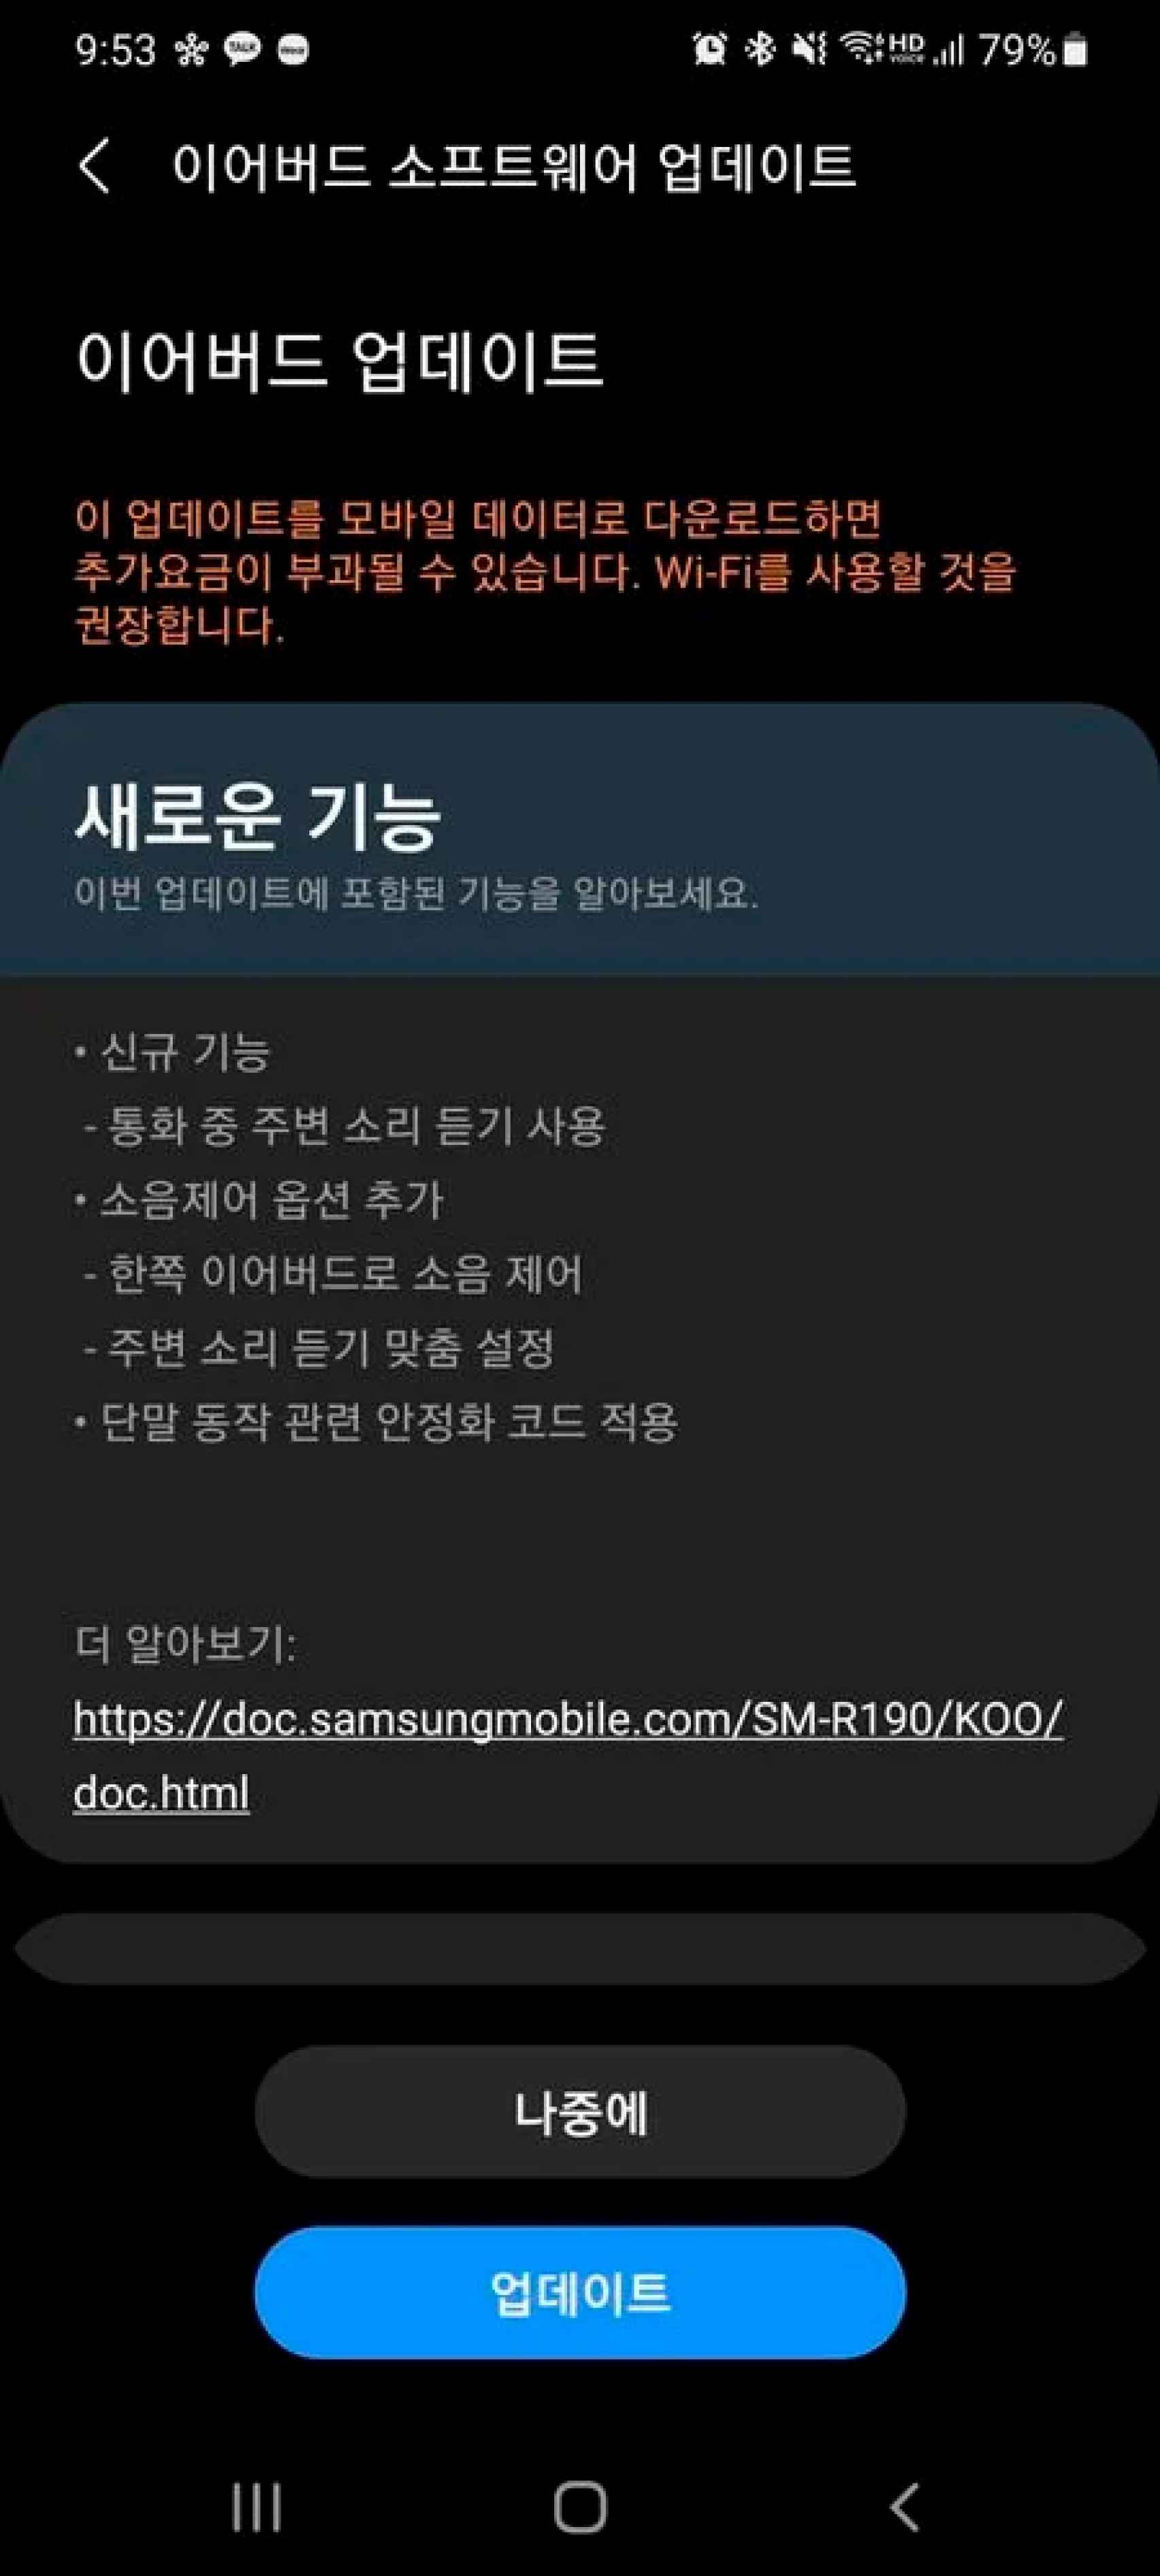 Actualización de los auriculares desde la app de Samsung